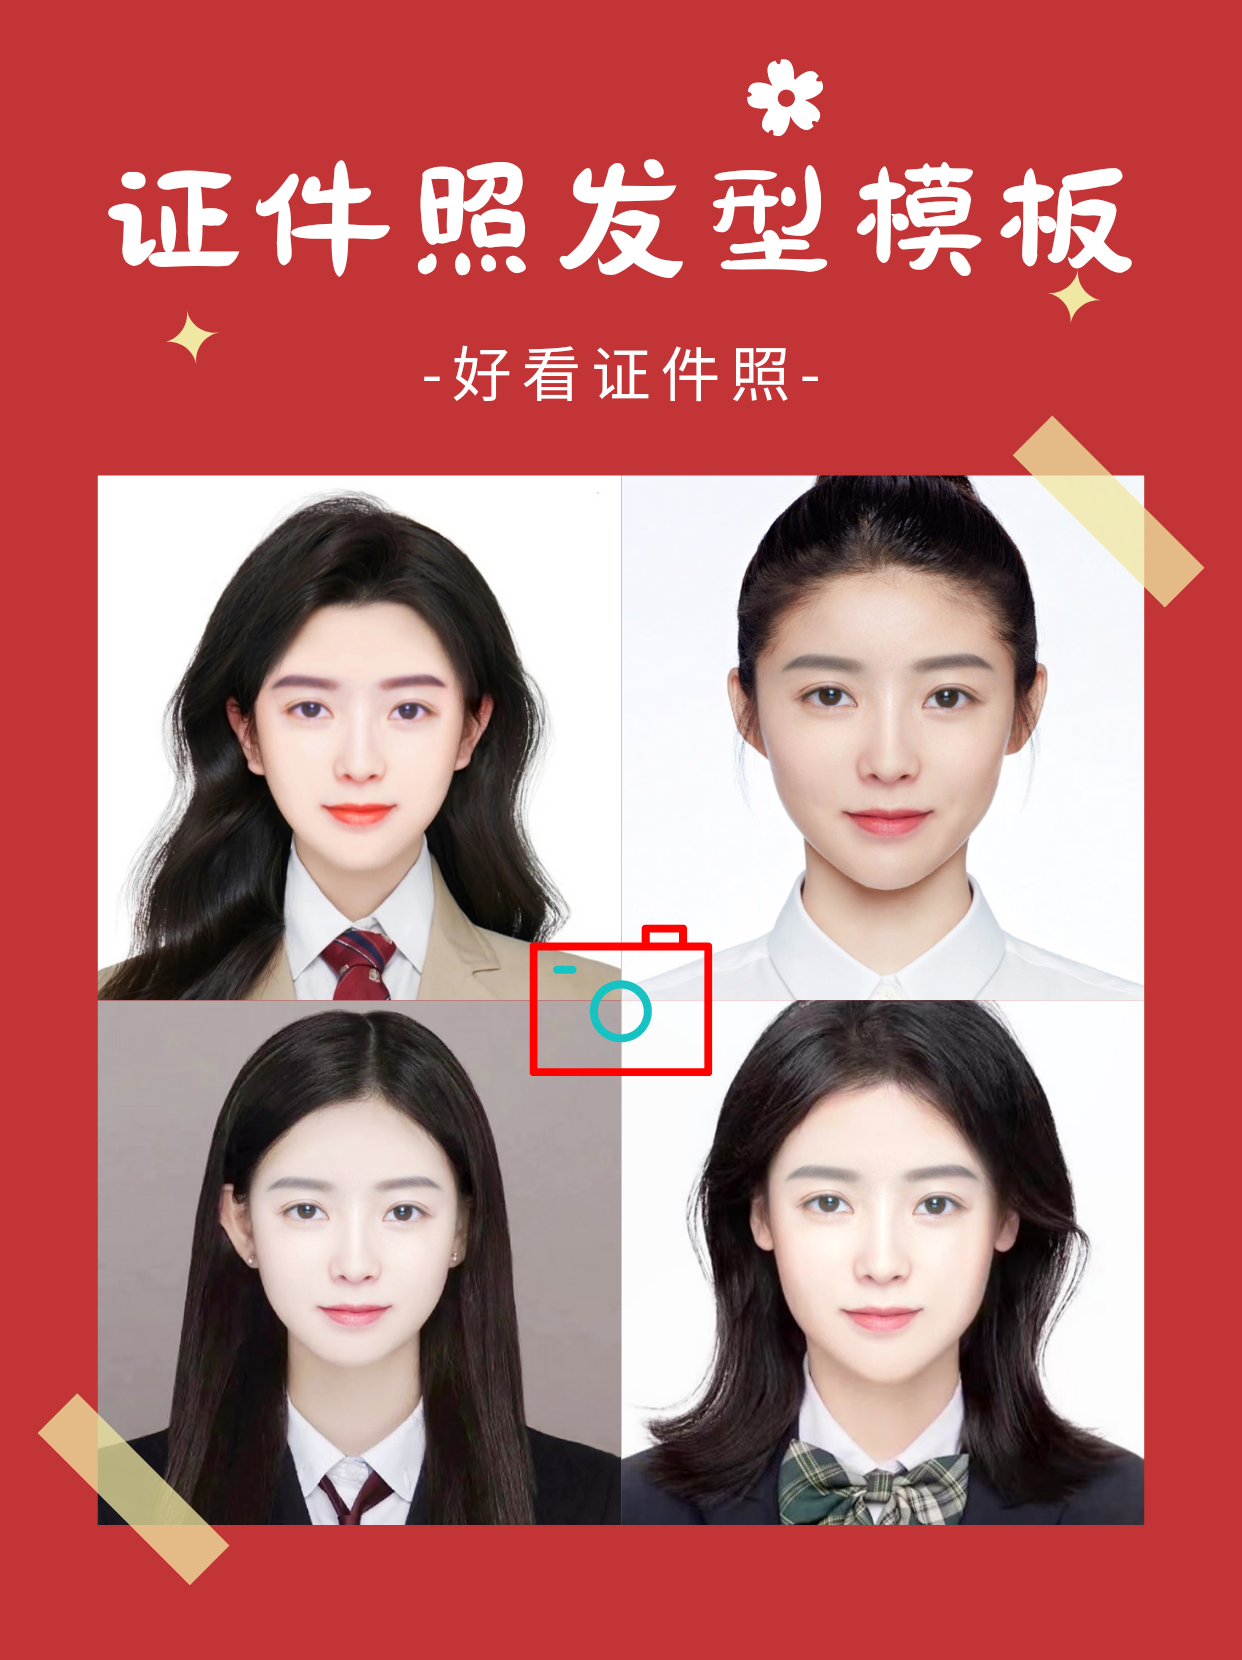 身份证照(zhao)片要求头发（身份证照片要求头发发型）